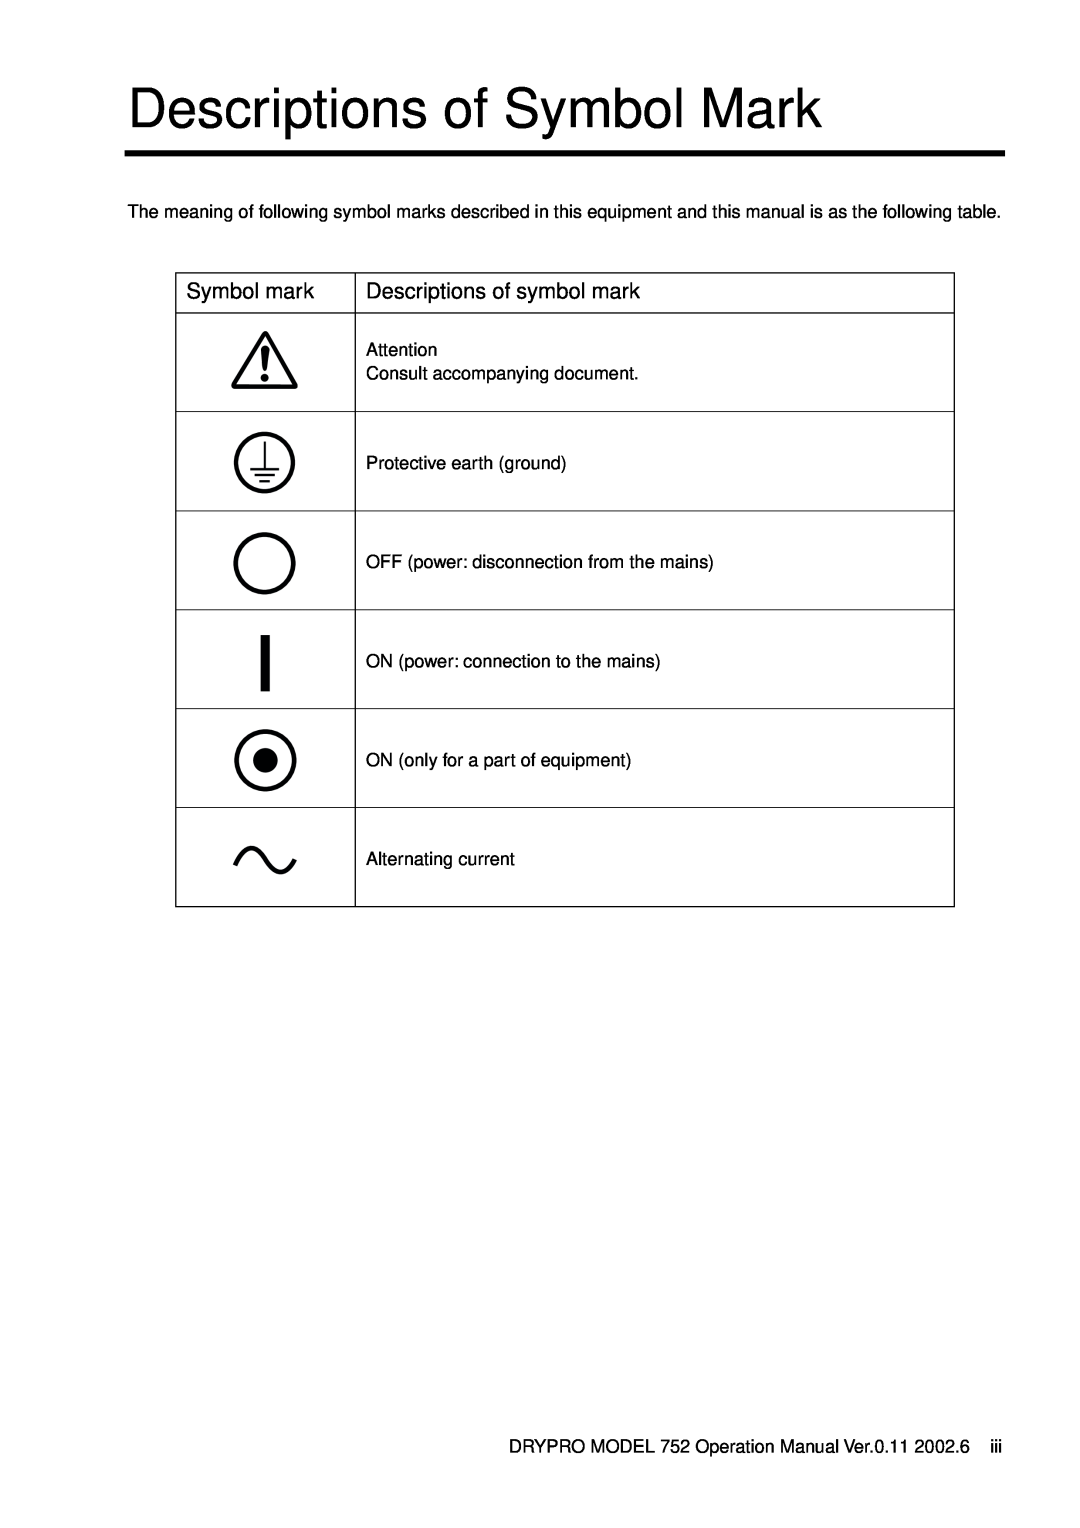 Konica Minolta 752 operation manual Descriptions of Symbol Mark, Symbol mark, Descriptions of symbol mark 